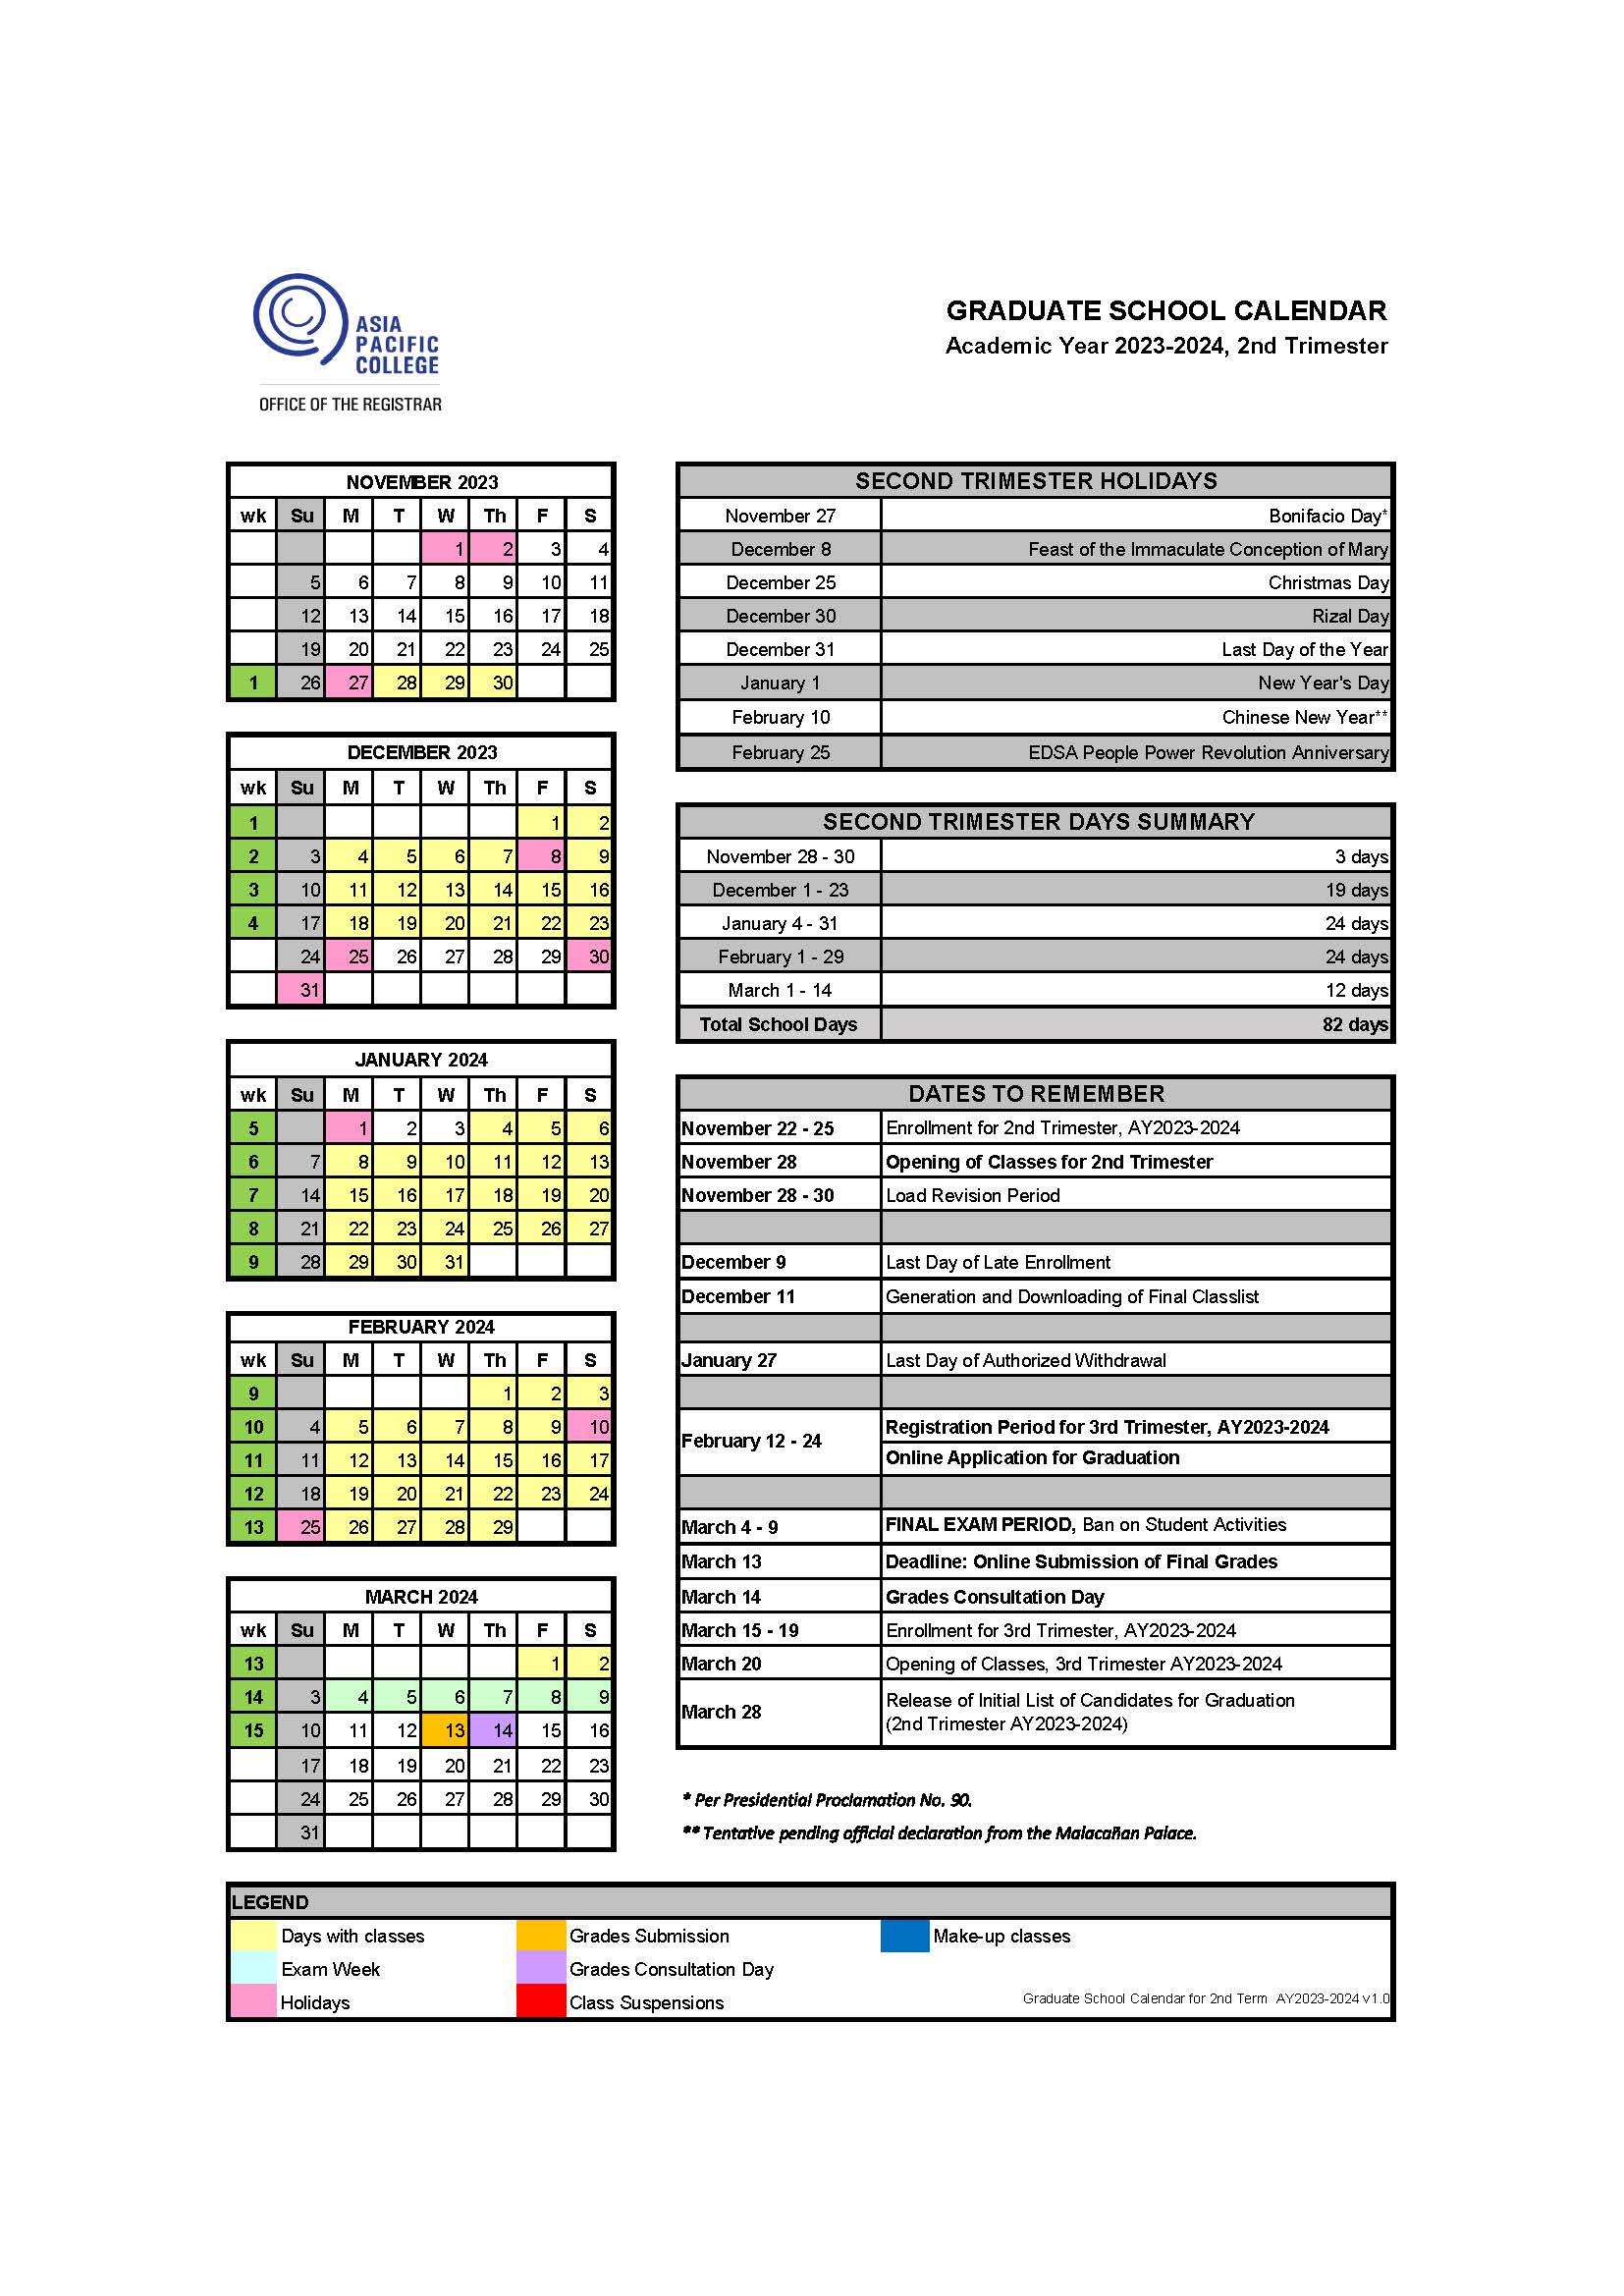 Term 2 Calendar (AY2023-24) - Graduate School v1.0